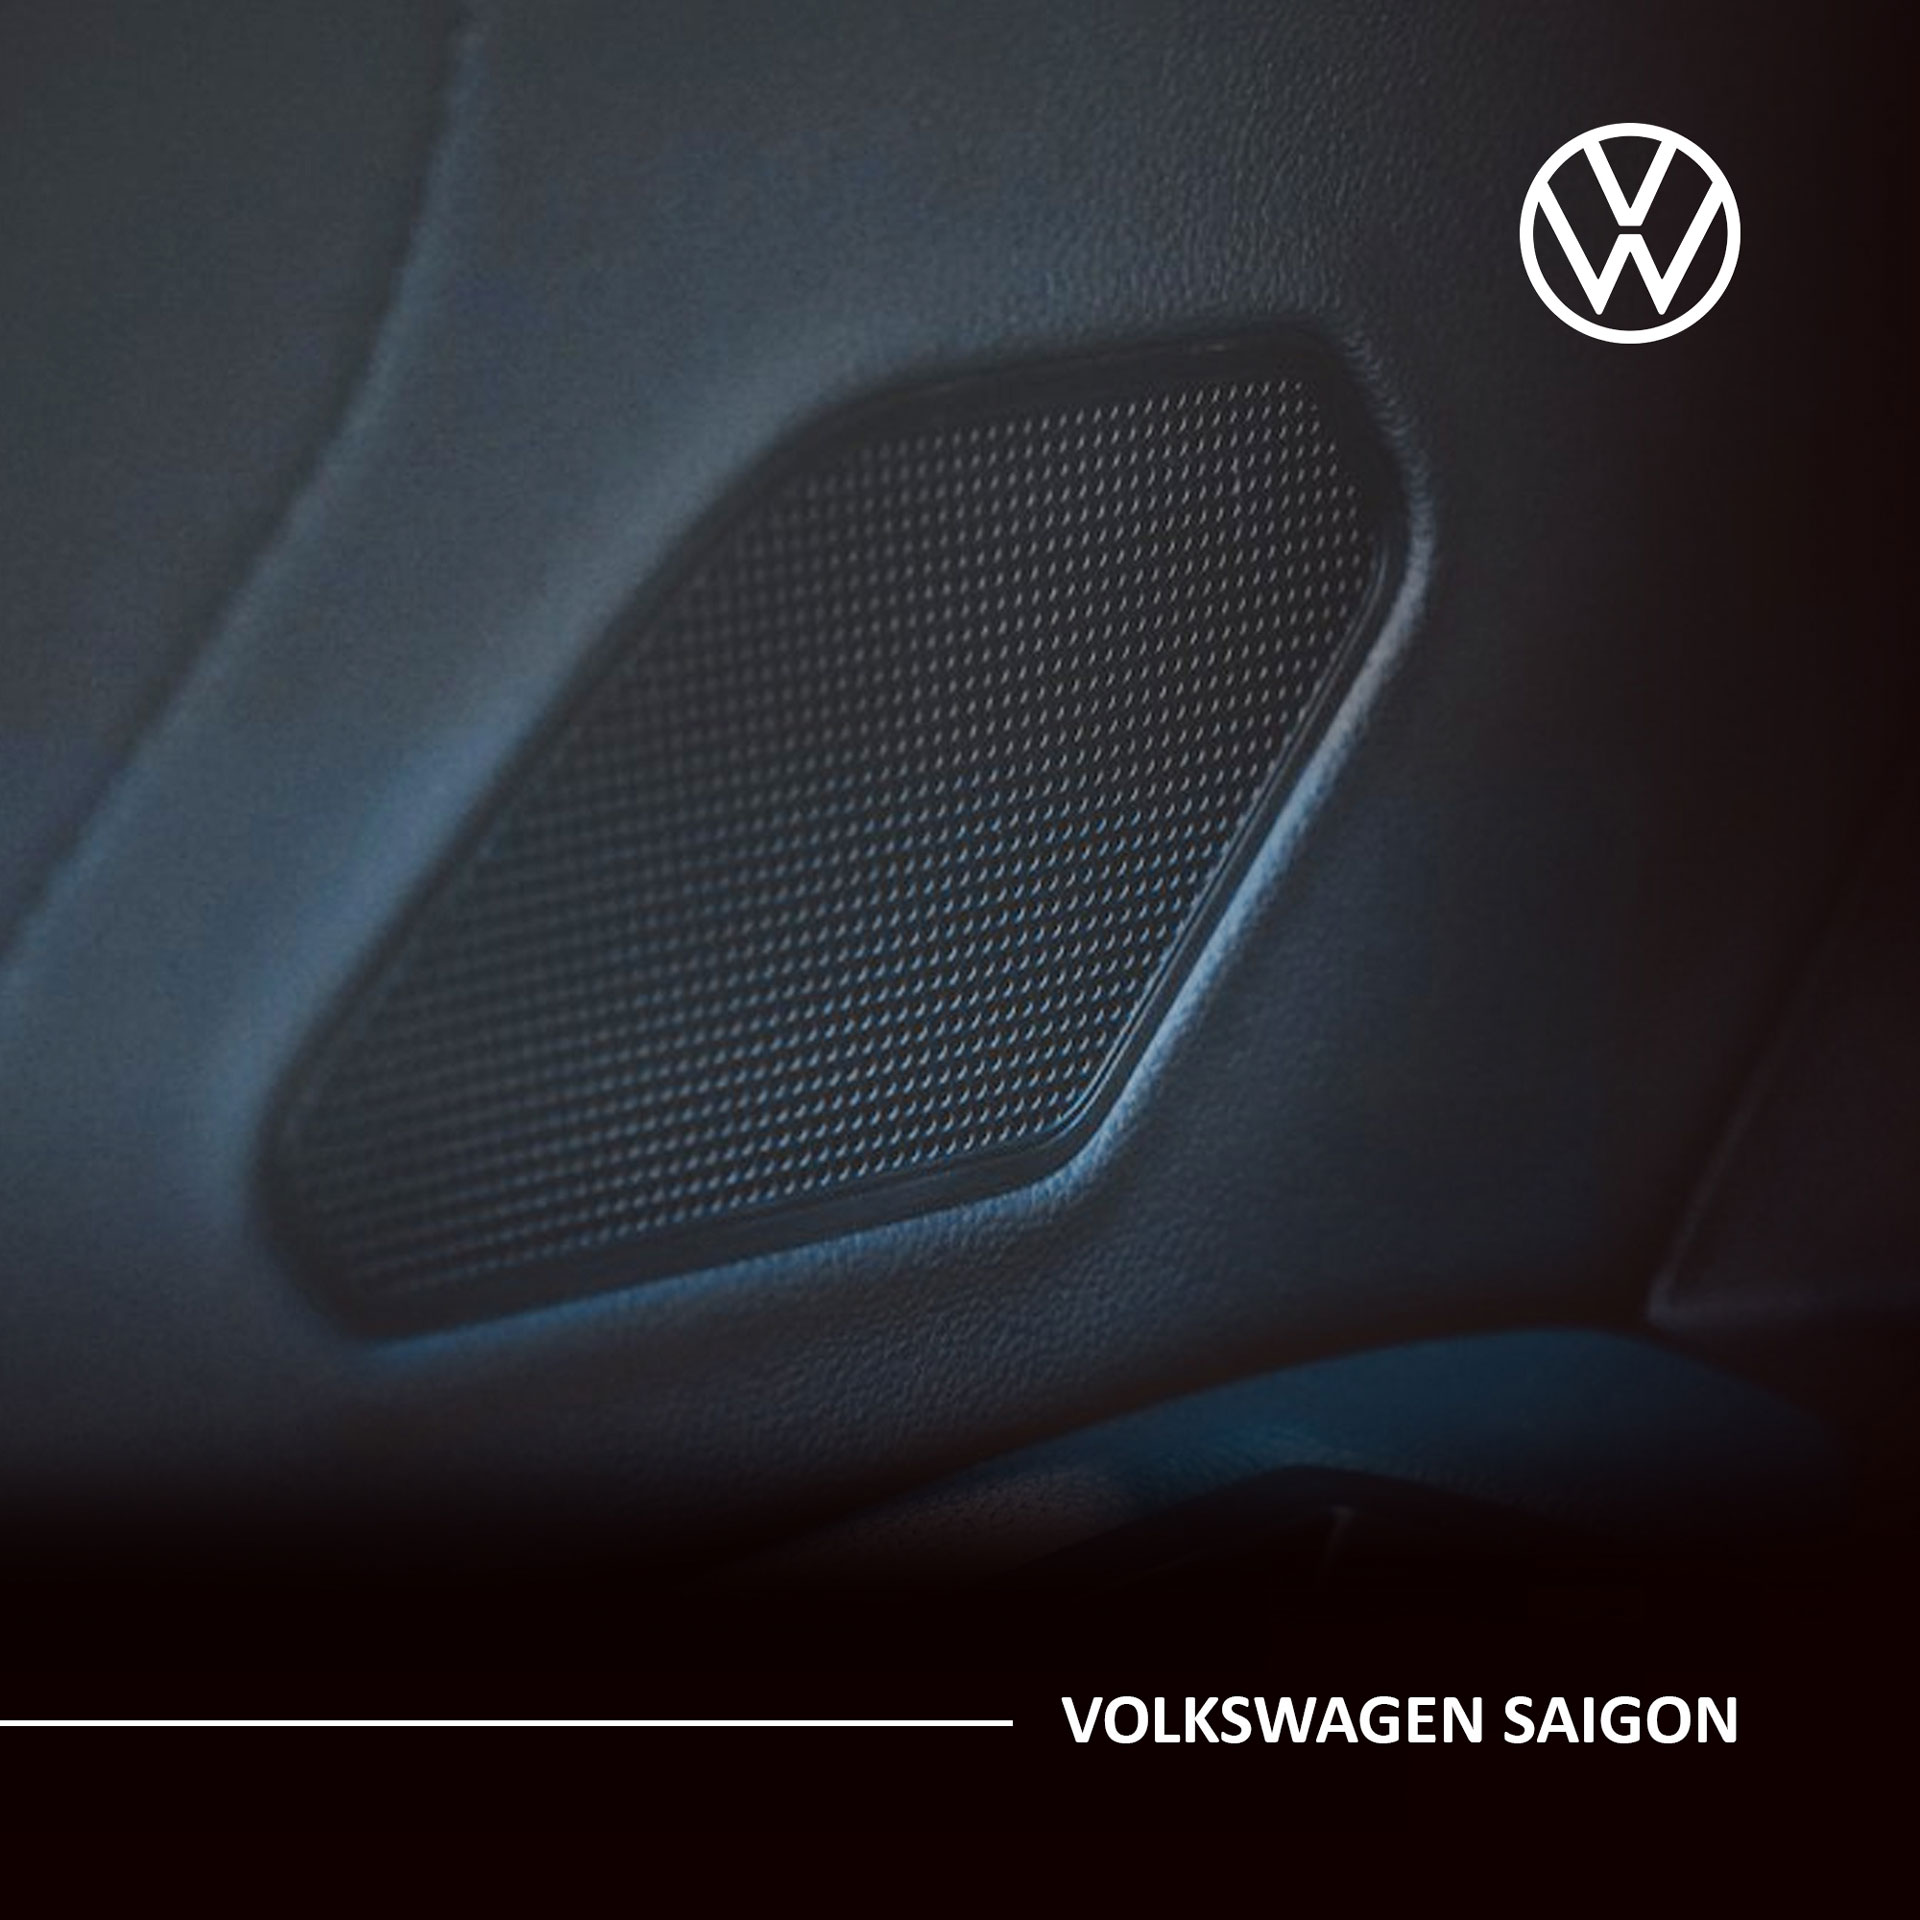 Hệ thống âm thanh DYNAUDIO trên xe Volkswagen.